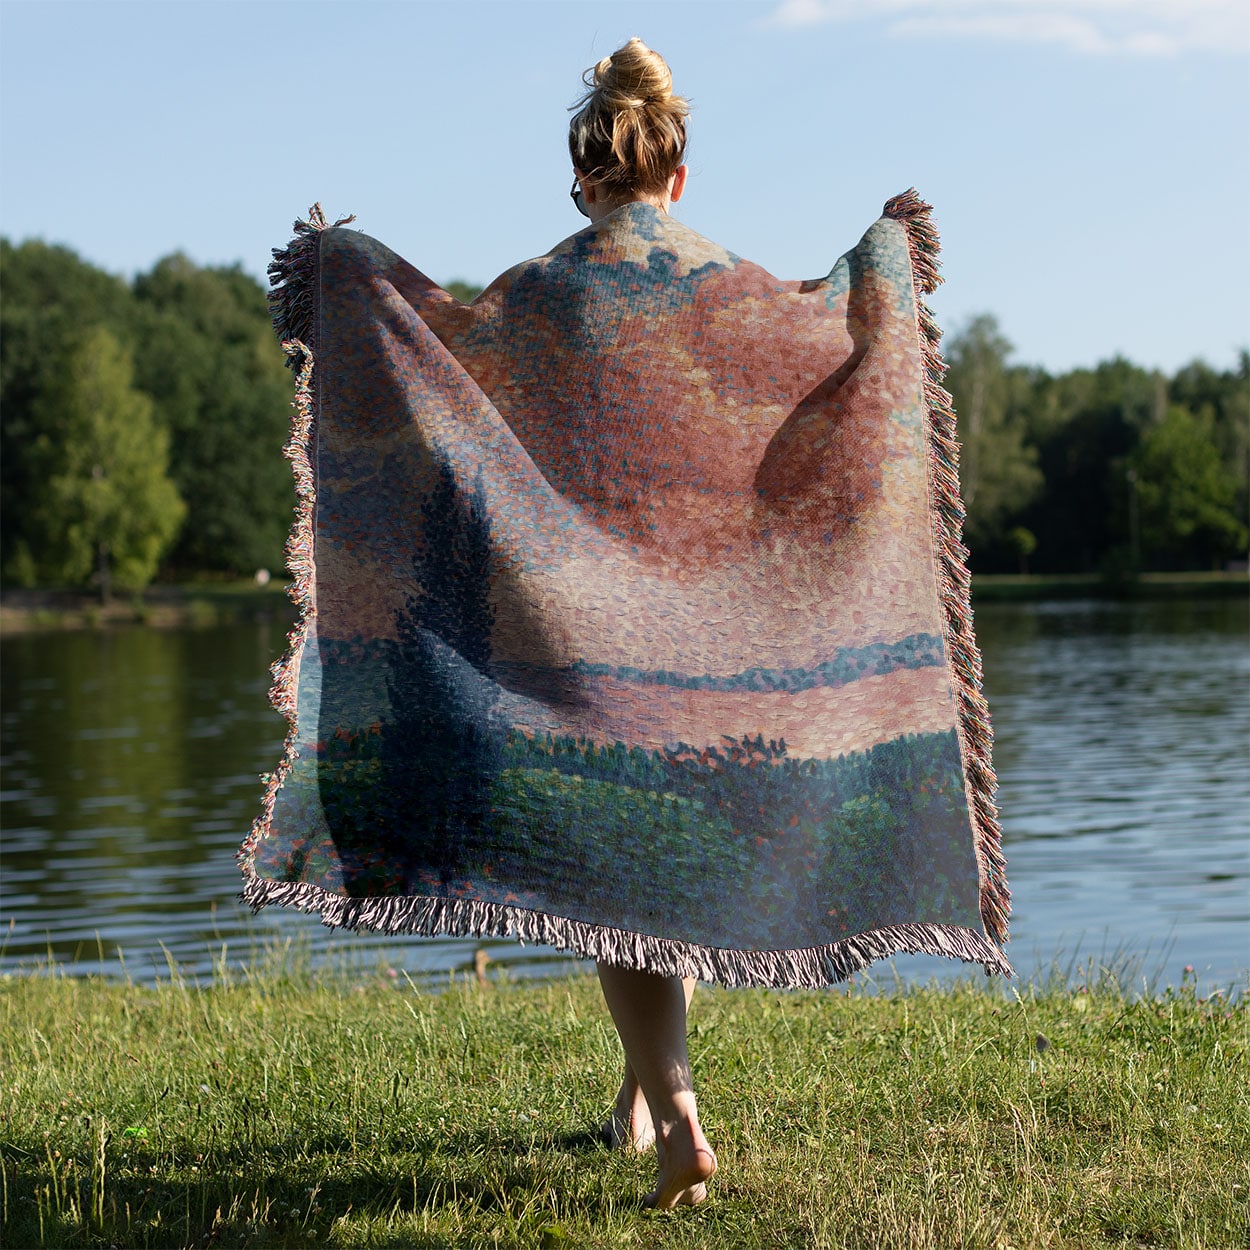 Dreamy Landscape Woven Blanket Held on a Woman's Back Outside